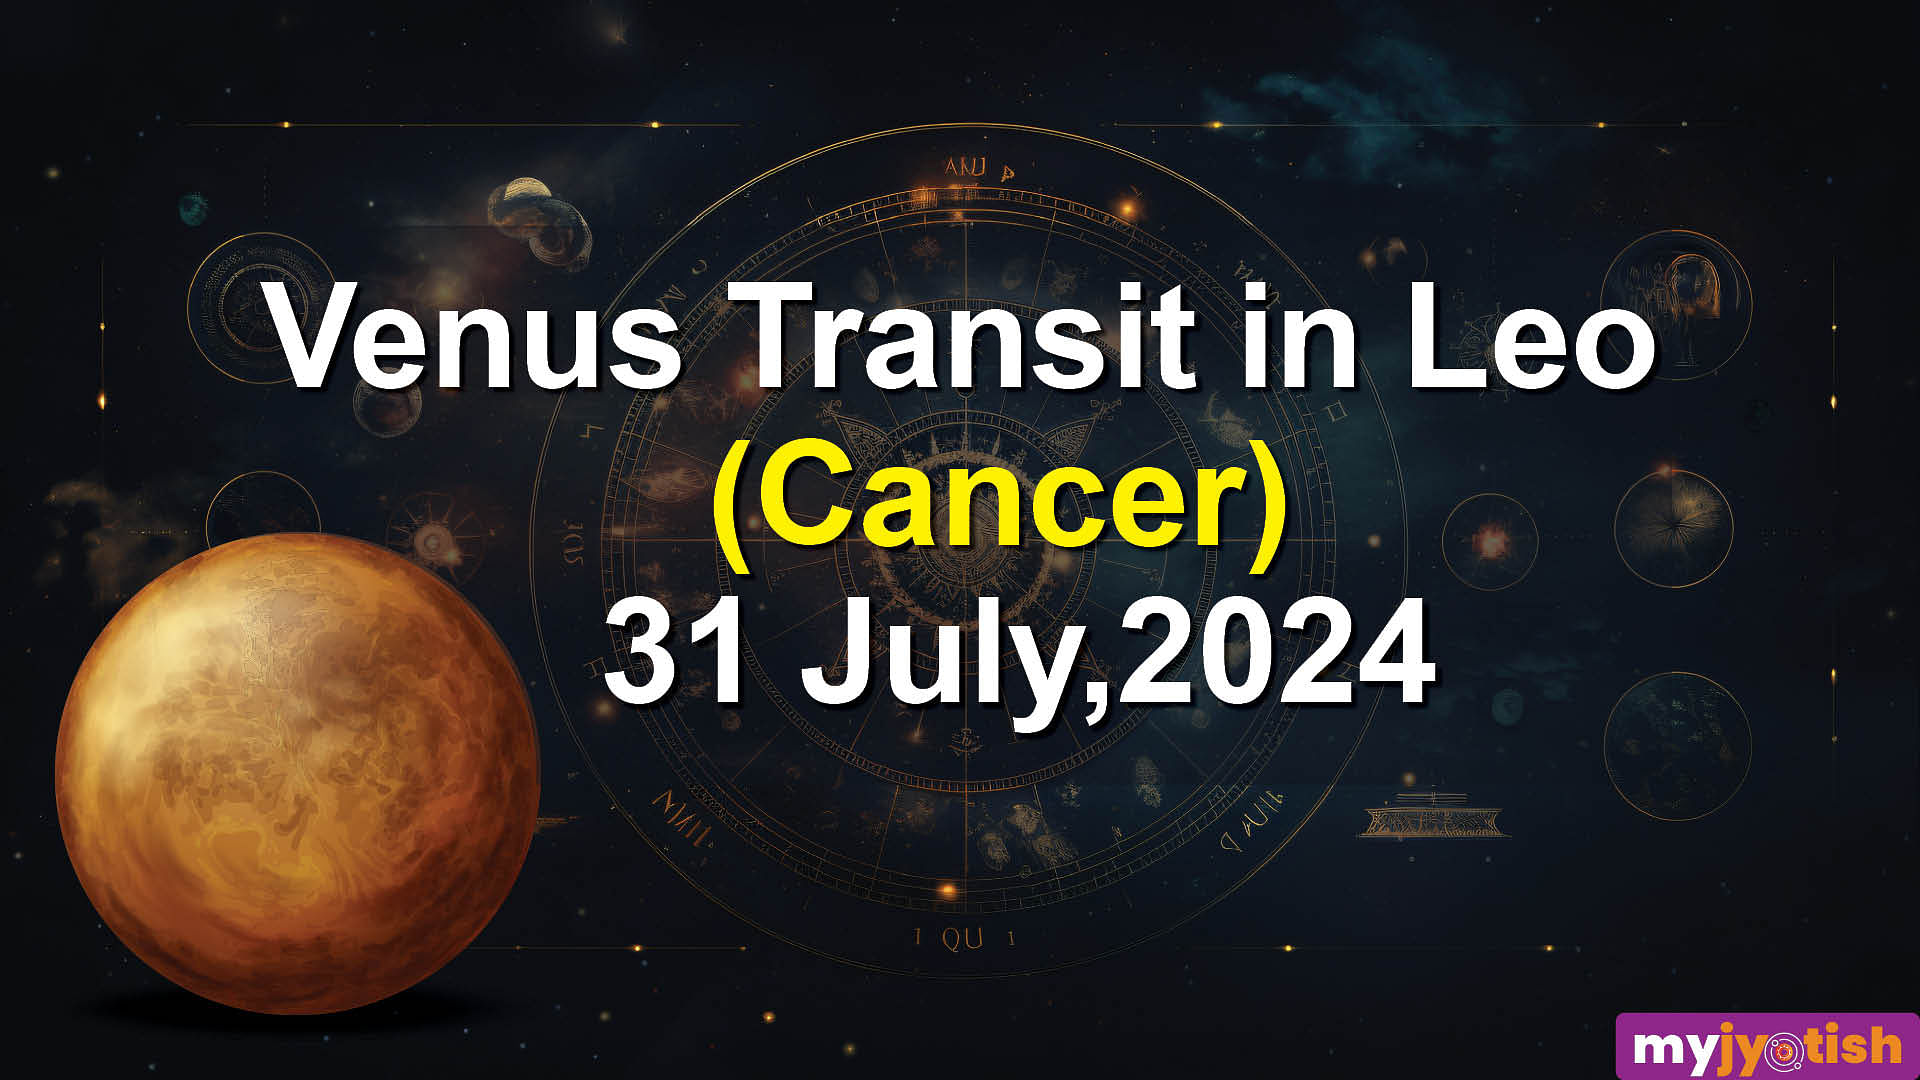 Venus transit in Leo